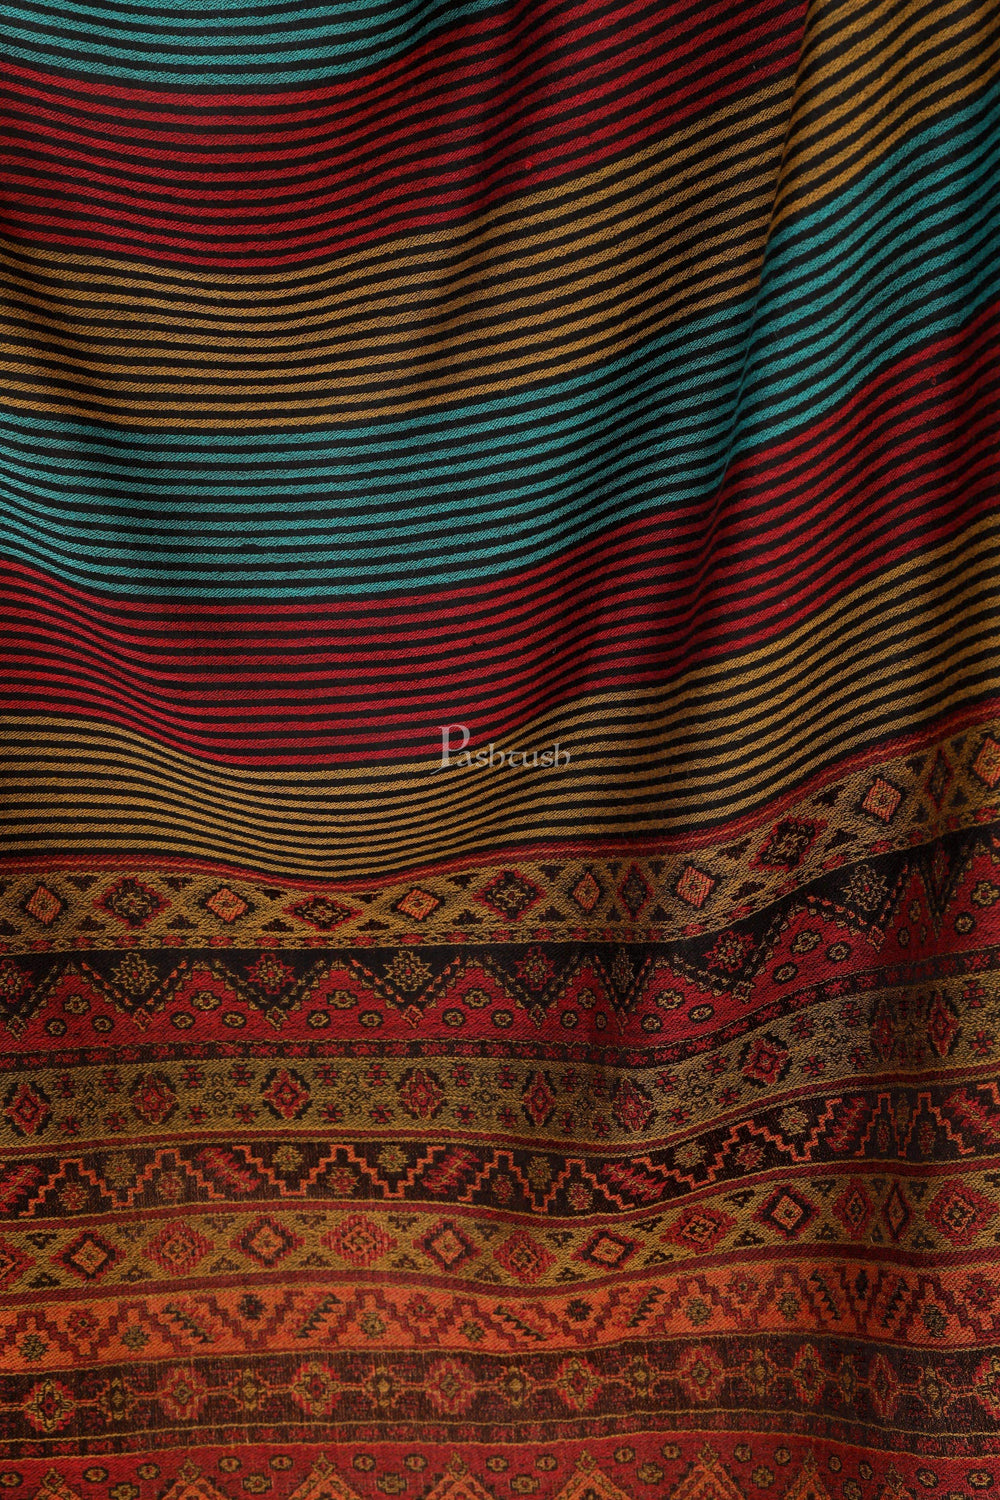 Pashtush India 70x200 Pashtush Women's Reversible Stole, Aztec Weave Scarf, Black